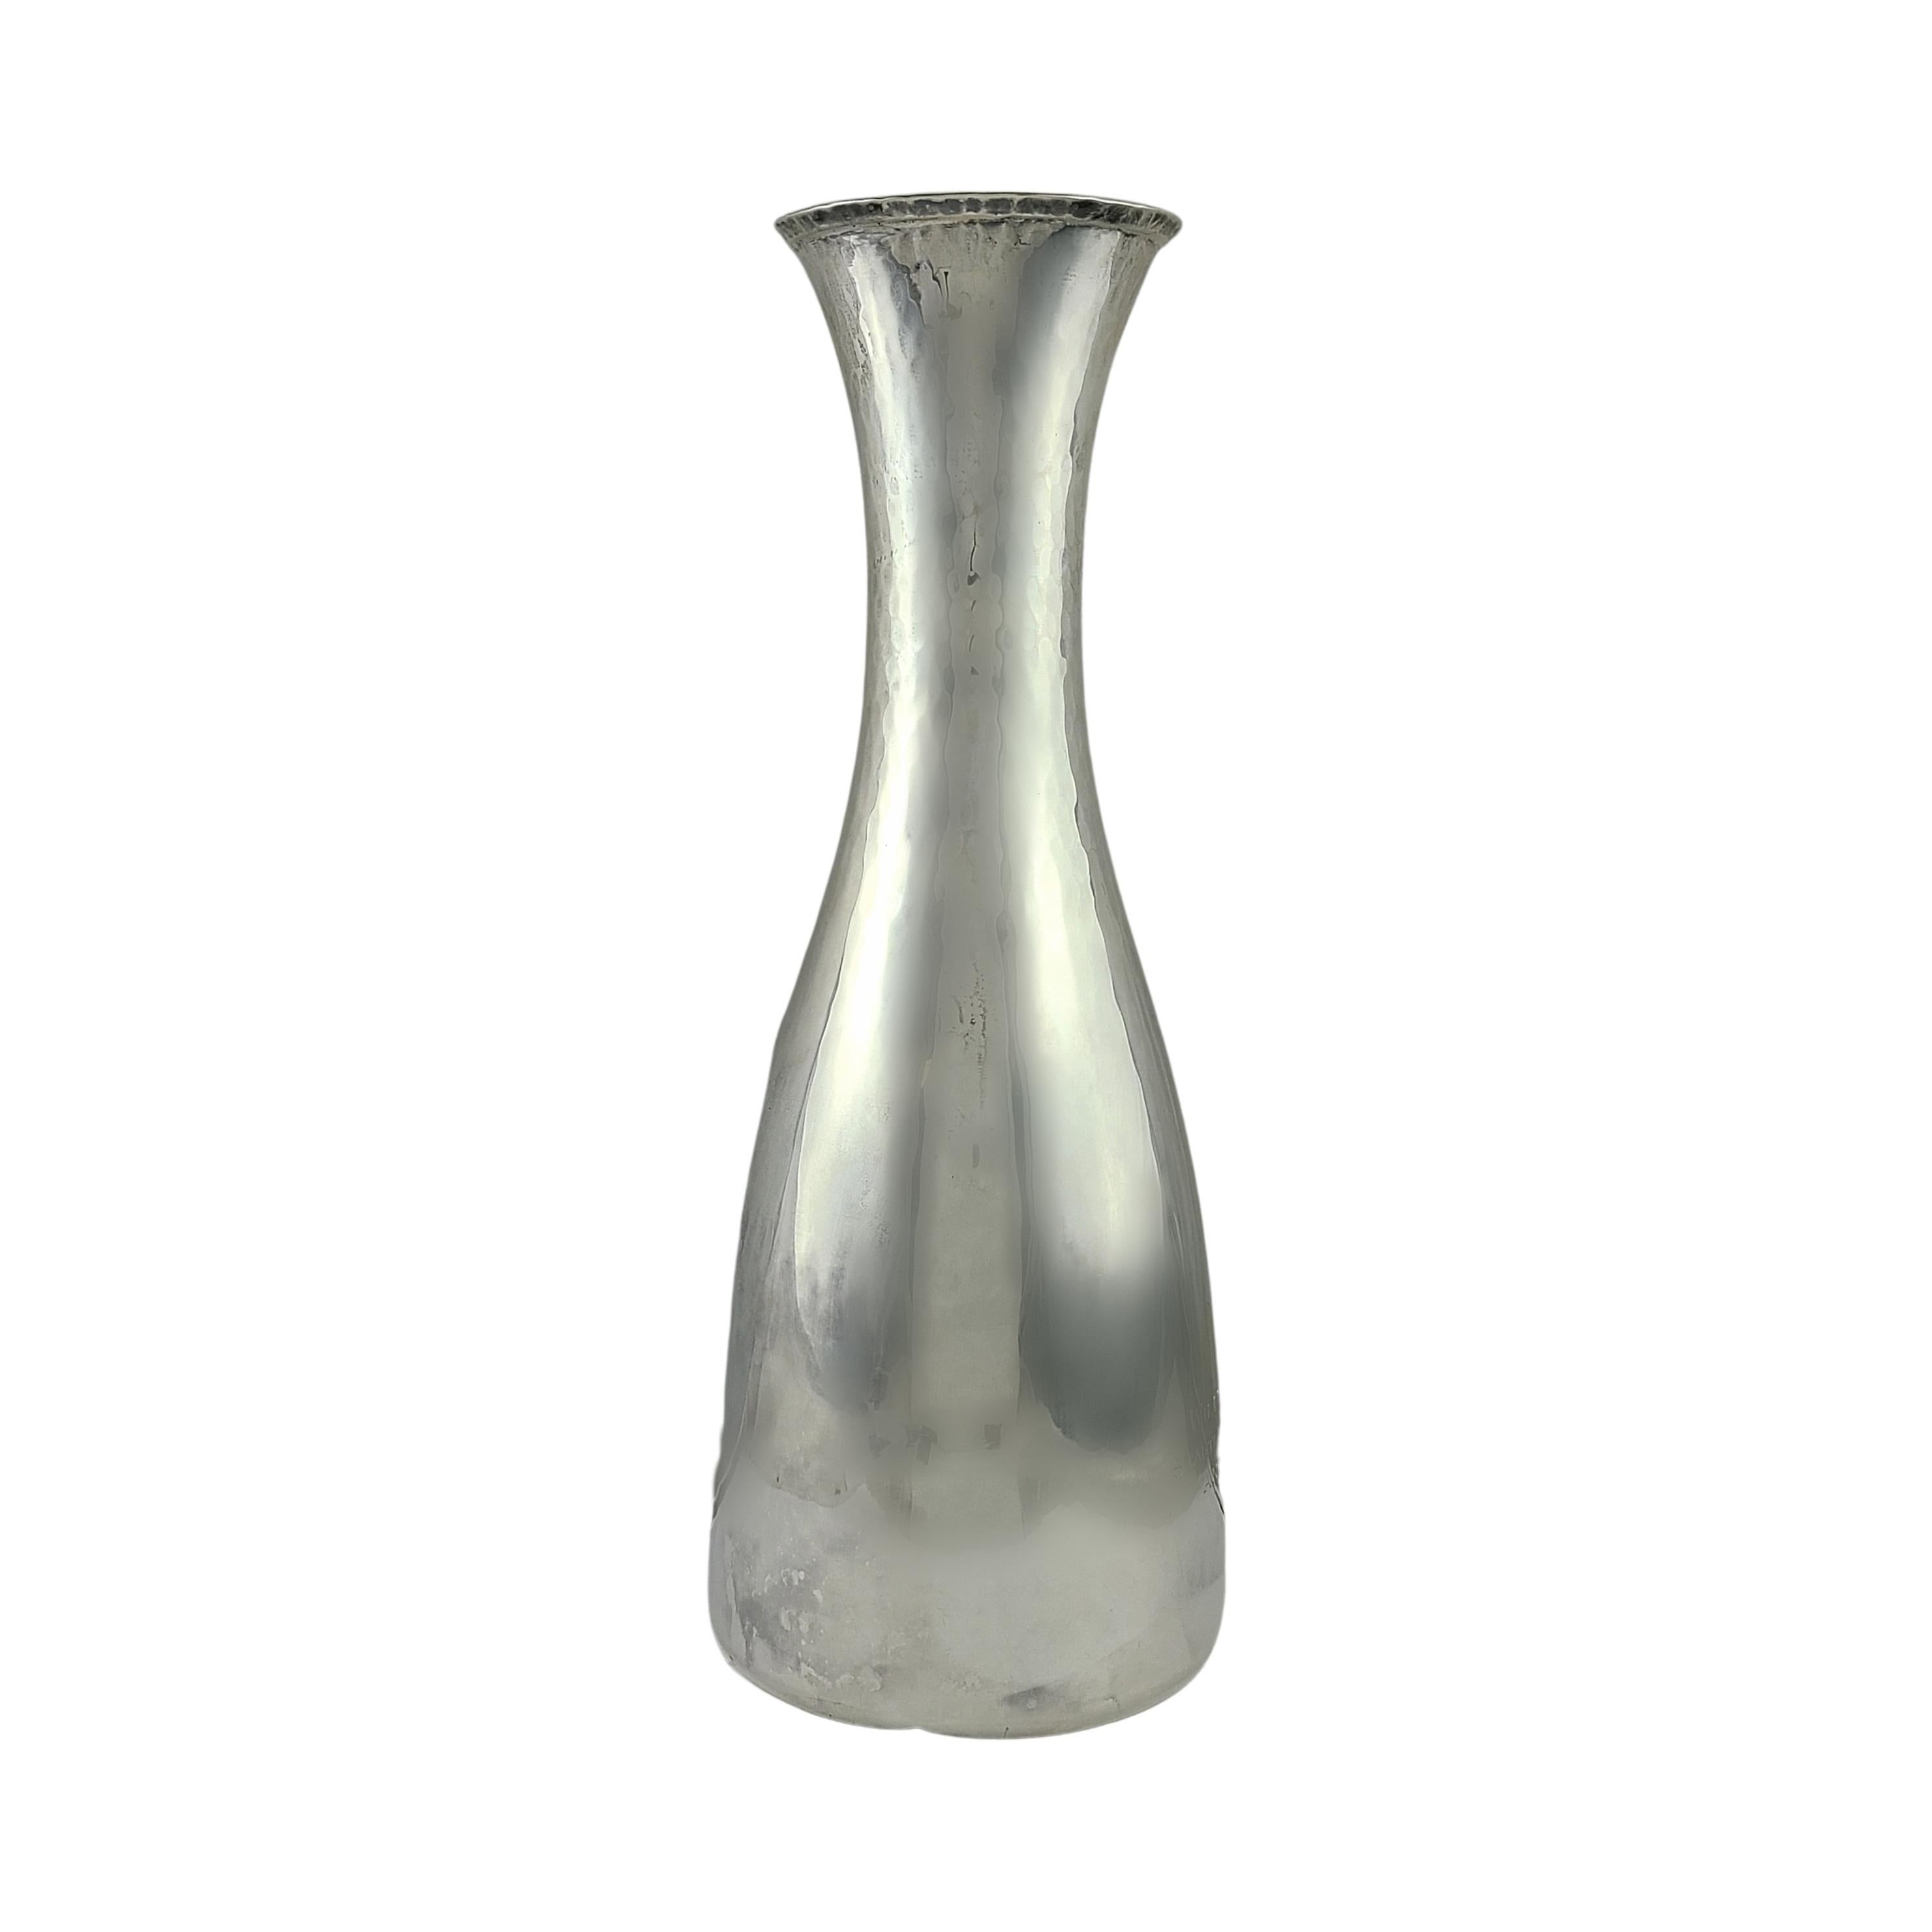 Vintage Karaffe/Vase aus Sterlingsilber von Cartier mit Gravur.

Gravur: 